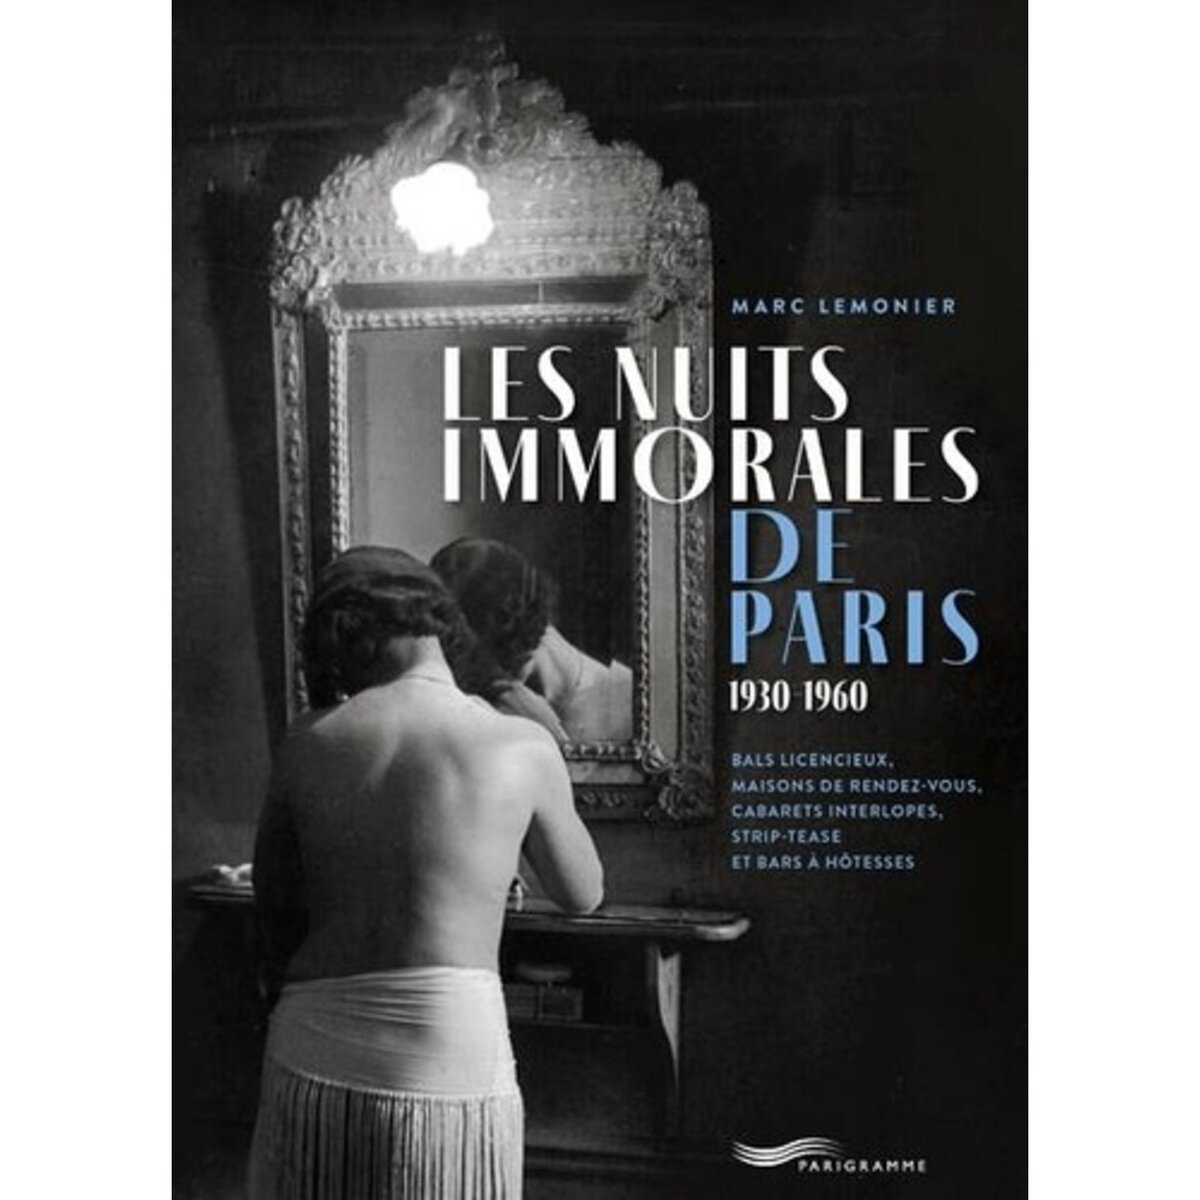  LES NUITS IMMORALES DE PARIS 1930-1960. BALS LICENCIEUX, MAISONS DE RENDEZ-VOUS, CABARETS INTERLOPES, STRIP-TEASE ET BARS A HOTESSES, Lemonier Marc